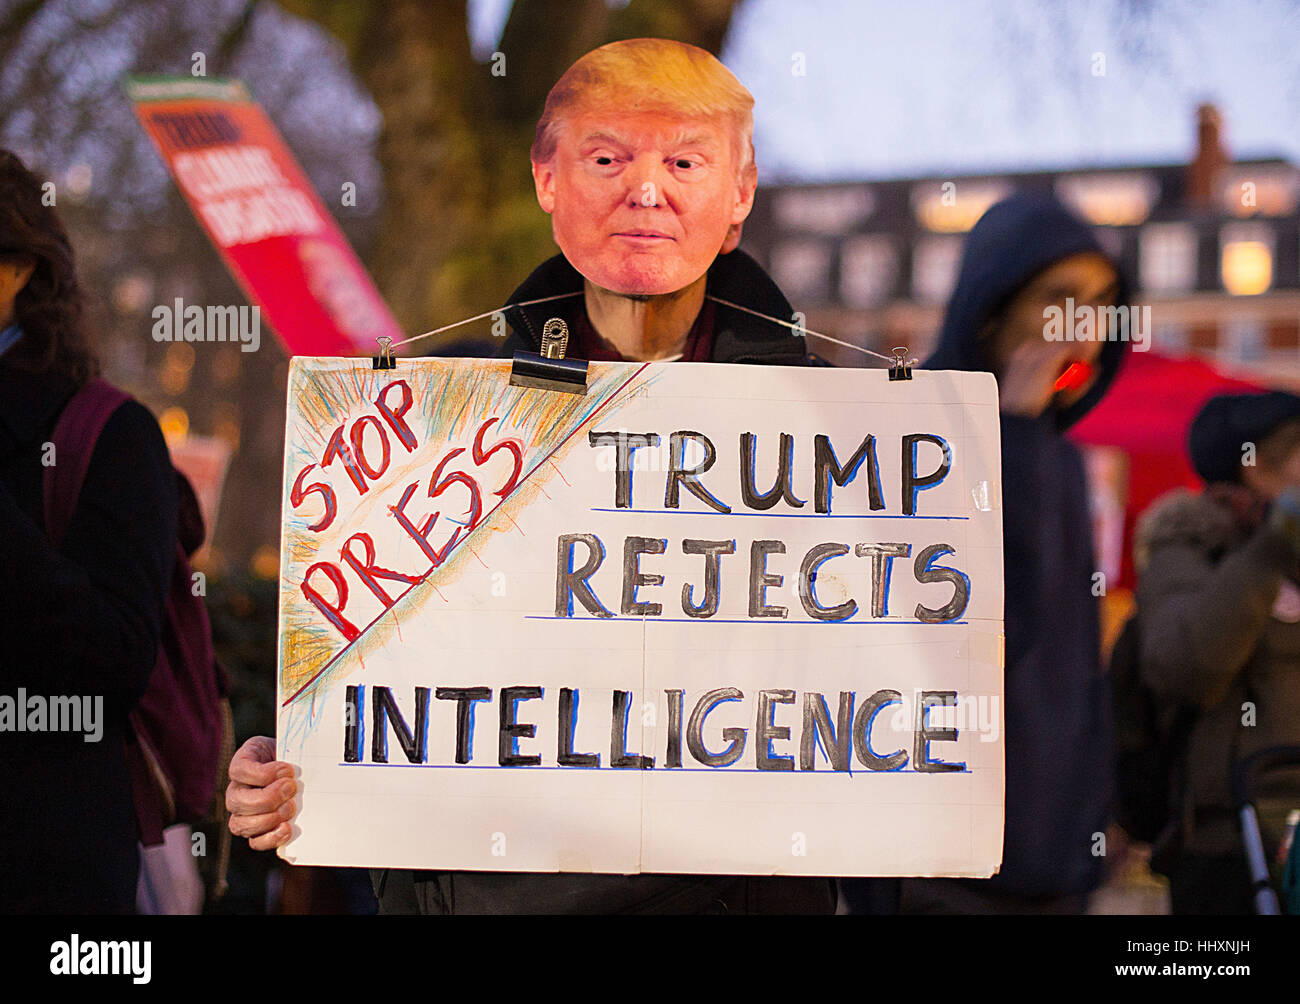 Un manifestant portant un masque de Donald Trump prend part à une manifestation devant l'ambassade des États-Unis, dans la région de Grosvenor Square, Londres, à la suite de l'investiture du président américain Donald Trump. Banque D'Images